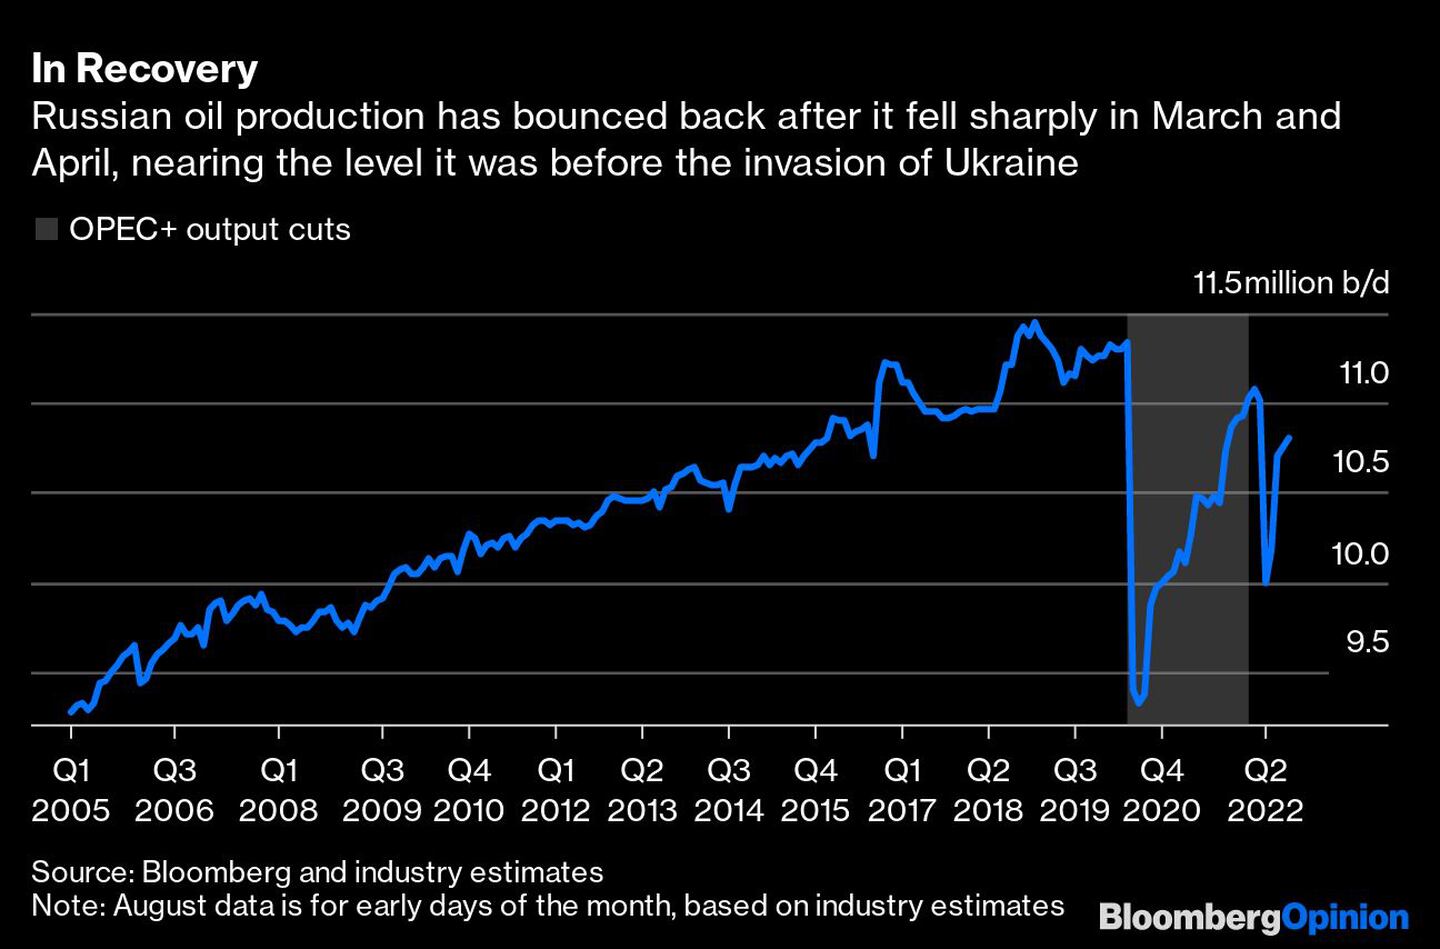 La producción de petróleo ruso se ha recuperado luego de caer fuertemente en marzo y abri. Ya está cerca de los niveles previos a la invasióndfd